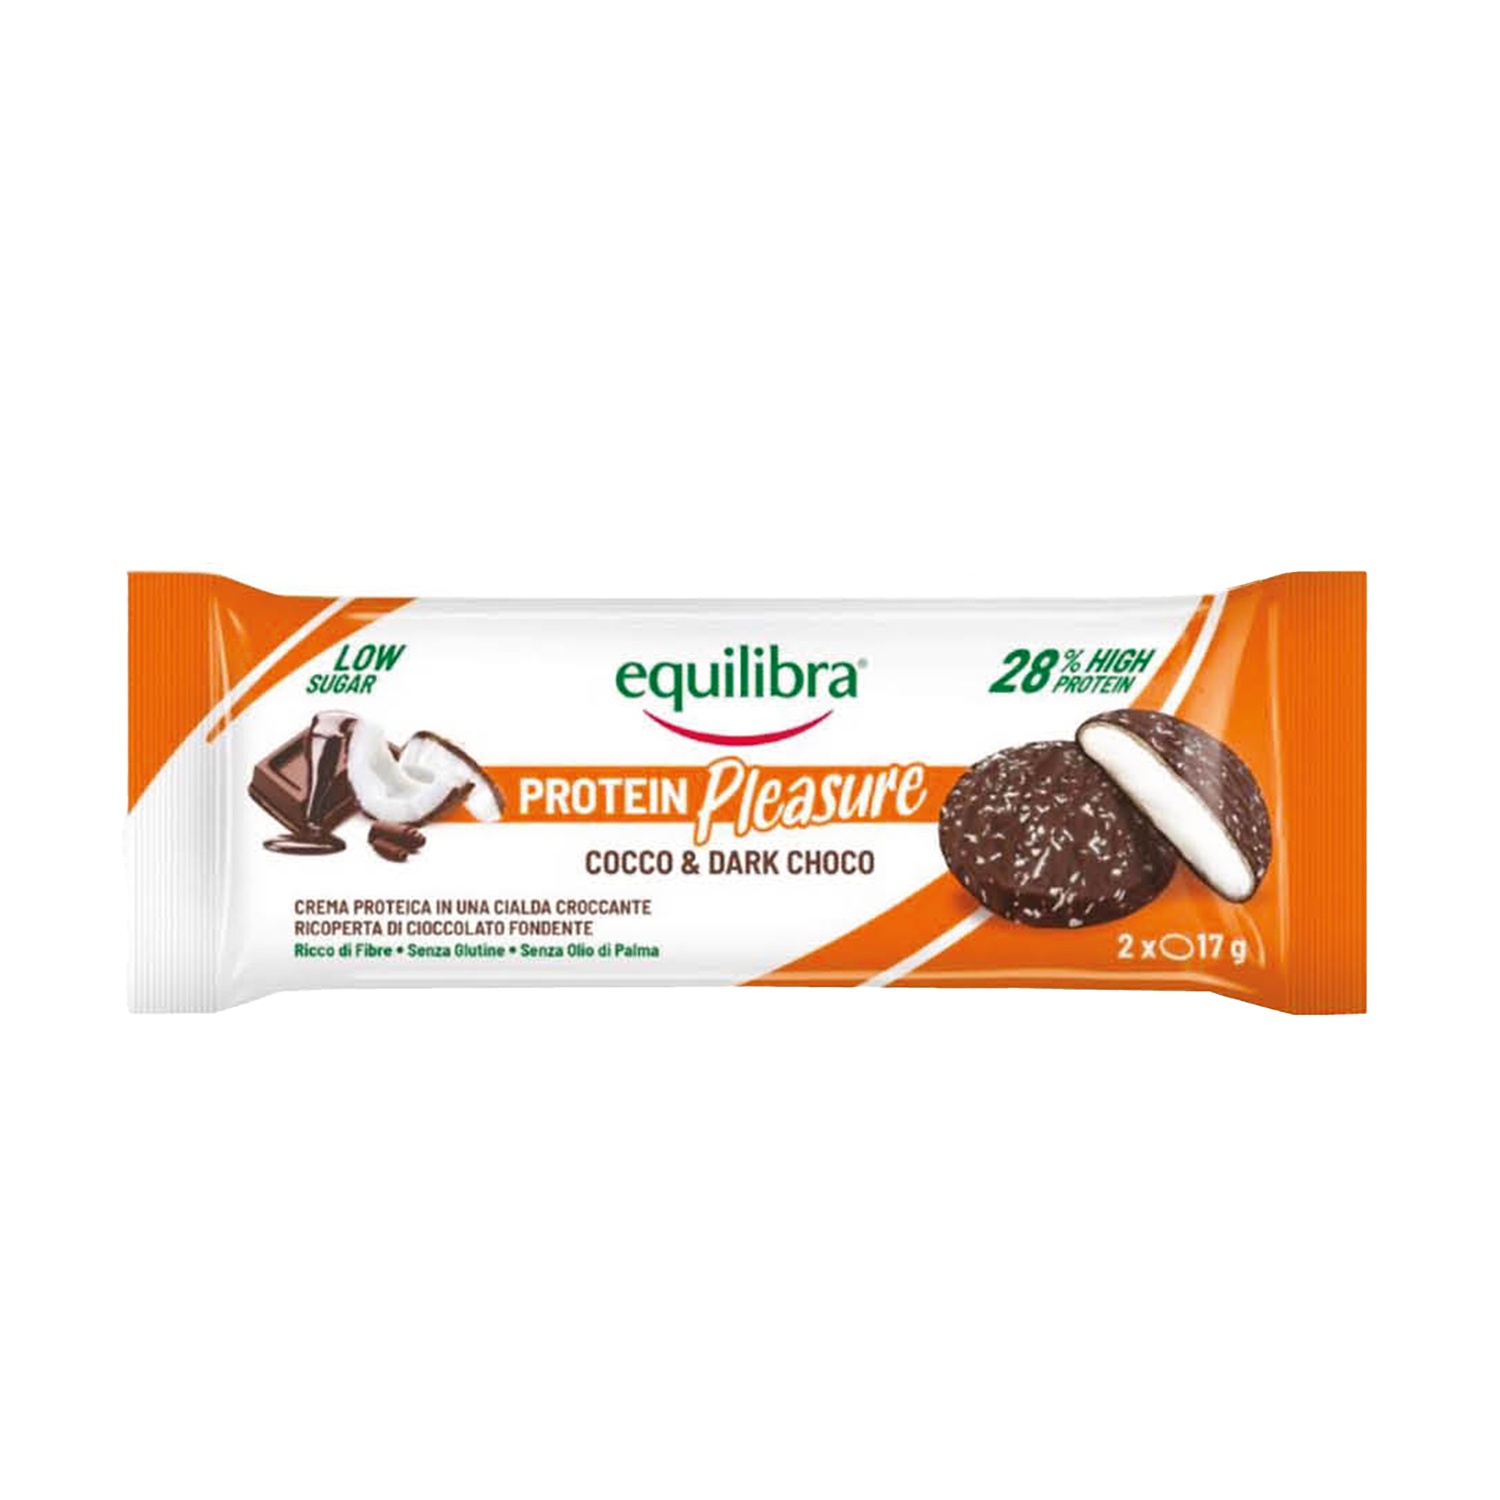 EQUILIBRA Protein Pleasure con cocco e cioccolato fondente